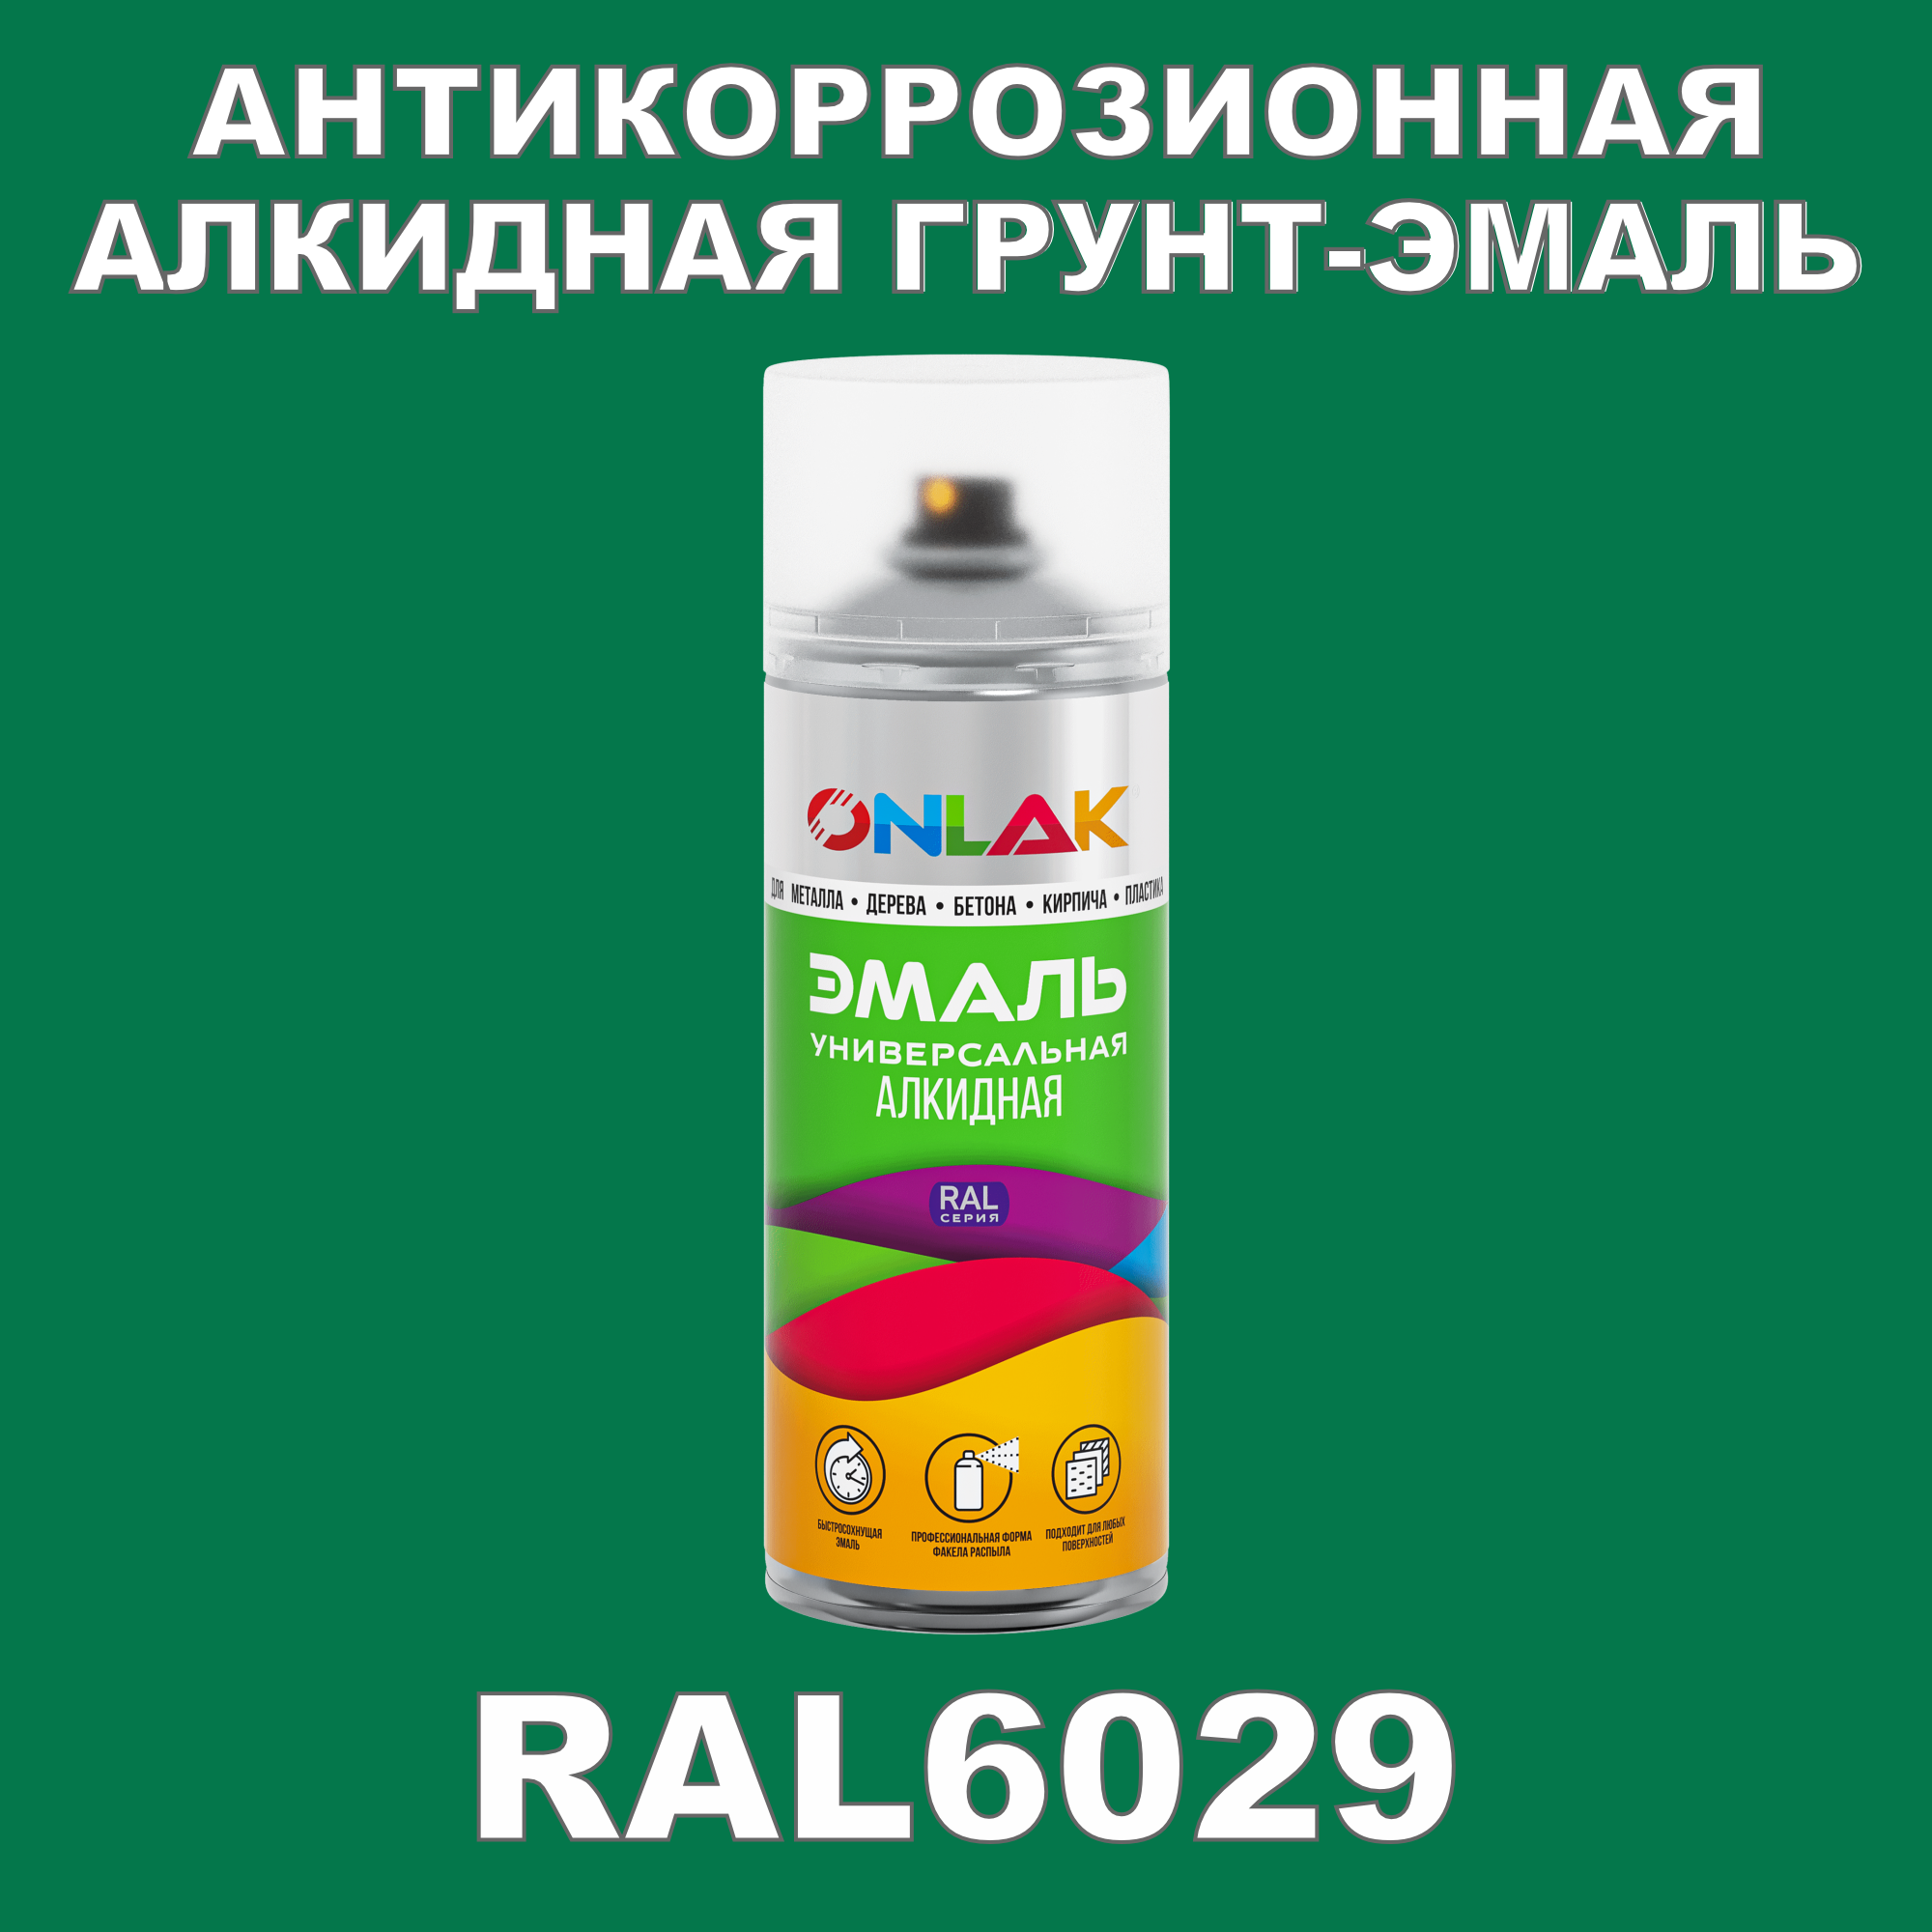 Антикоррозионная грунт-эмаль ONLAK RAL 6029,зеленый,561 мл